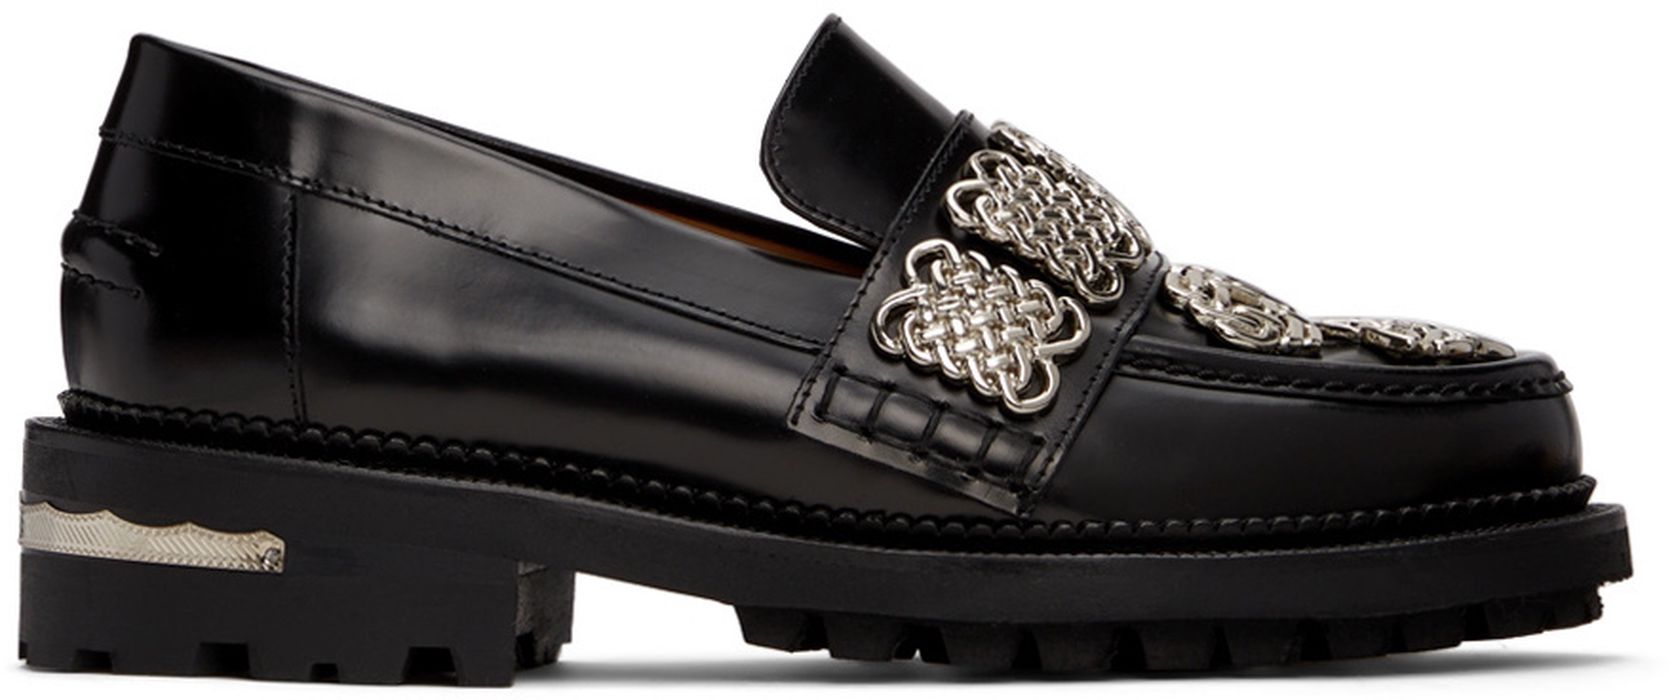 Toga Pulla Black Leather Embellished Loafers